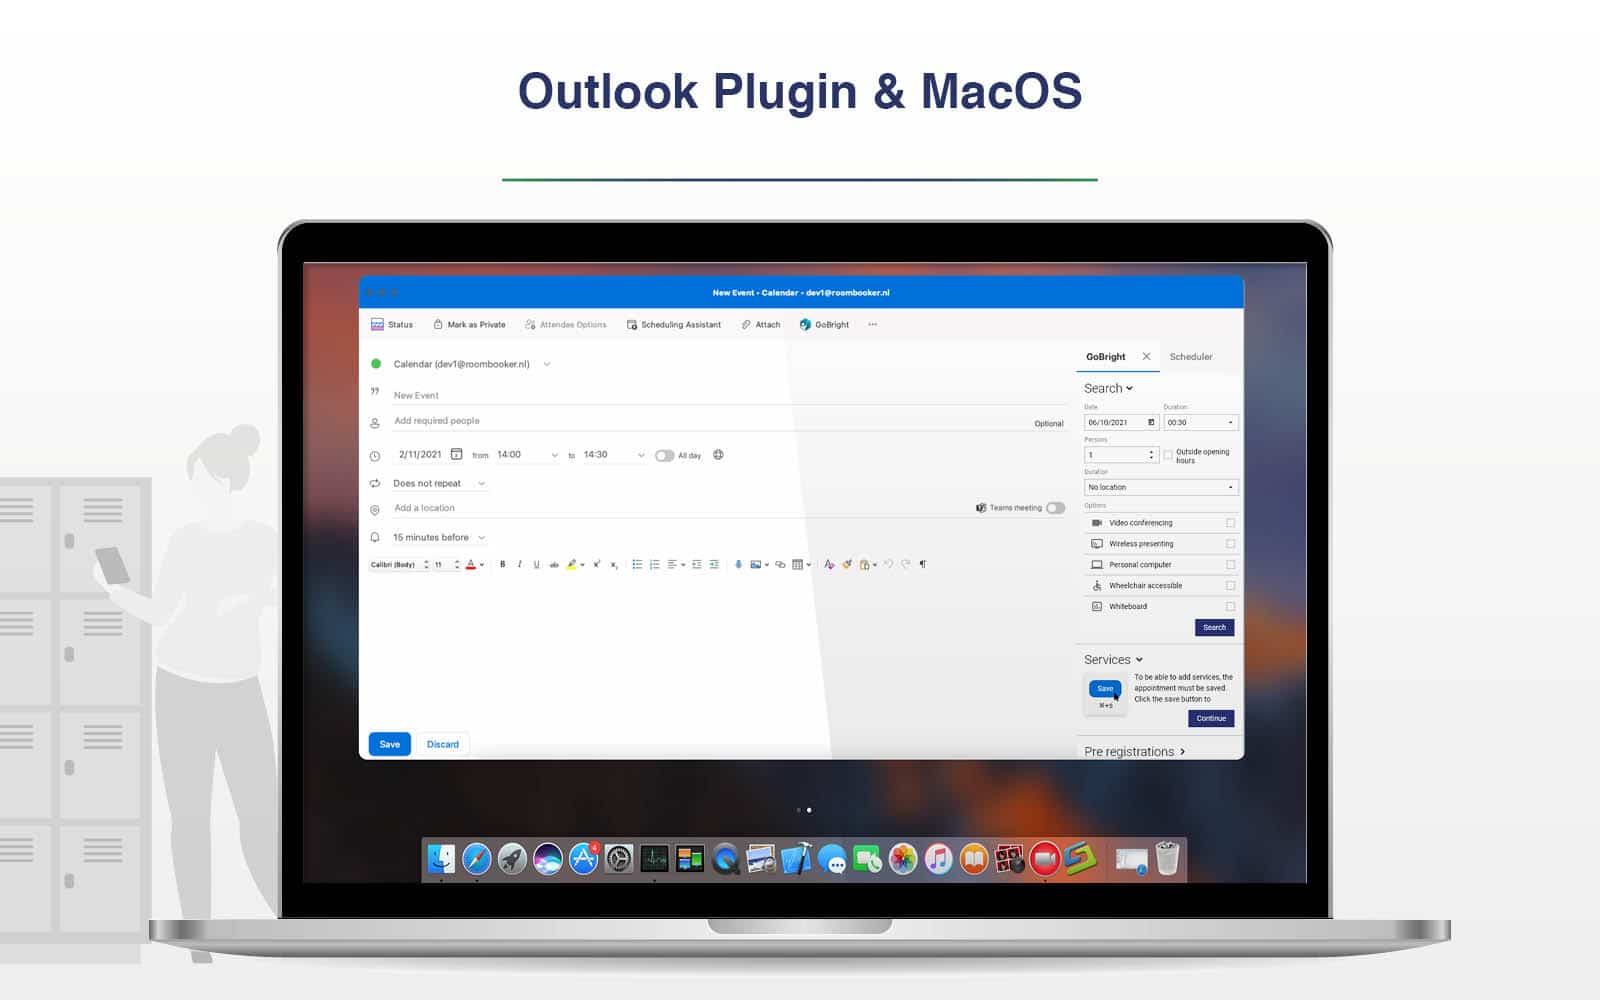 Outlook plug-in &amp; MacOS